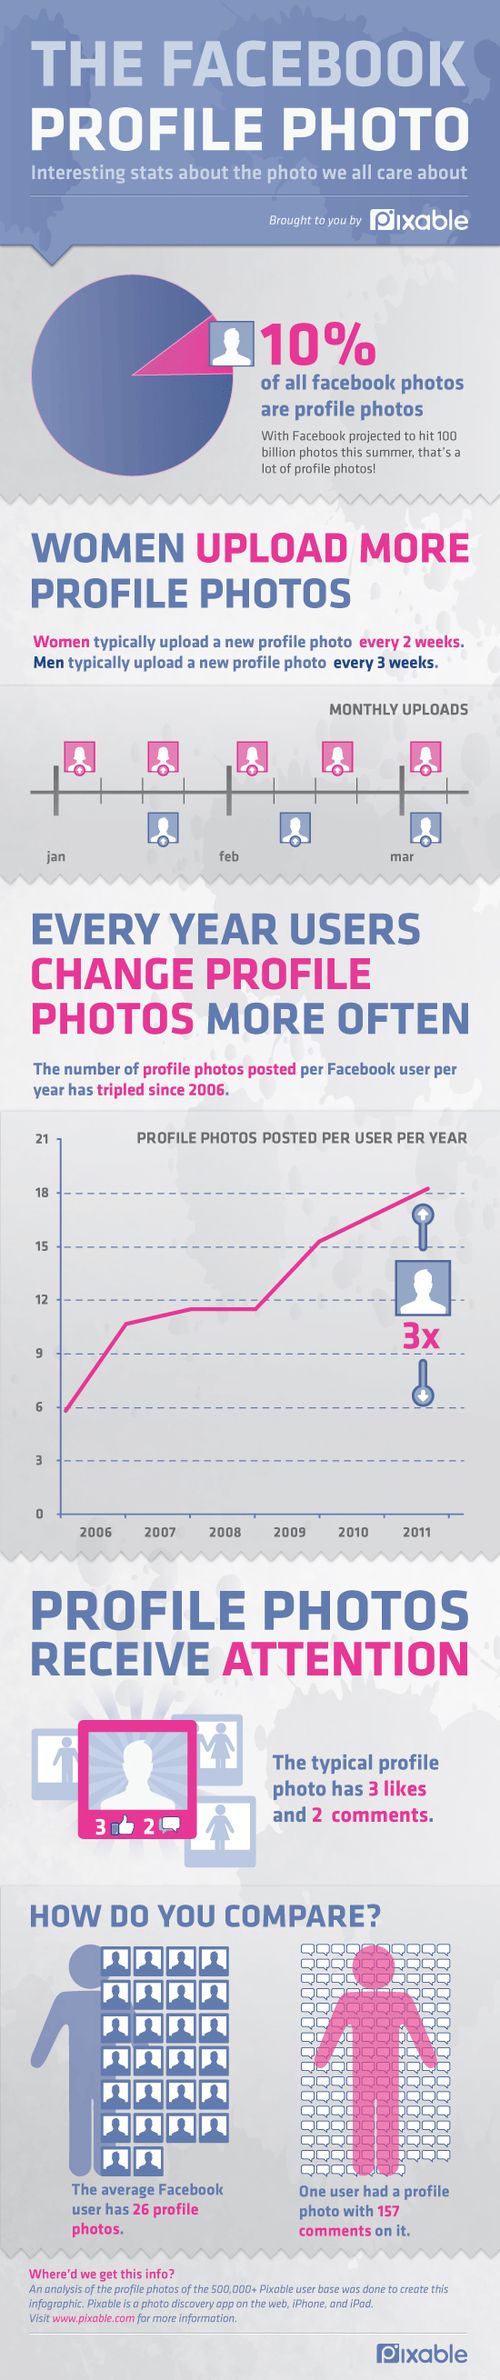 Facebook: quante volte cambi la foto profilo? [Infografica]